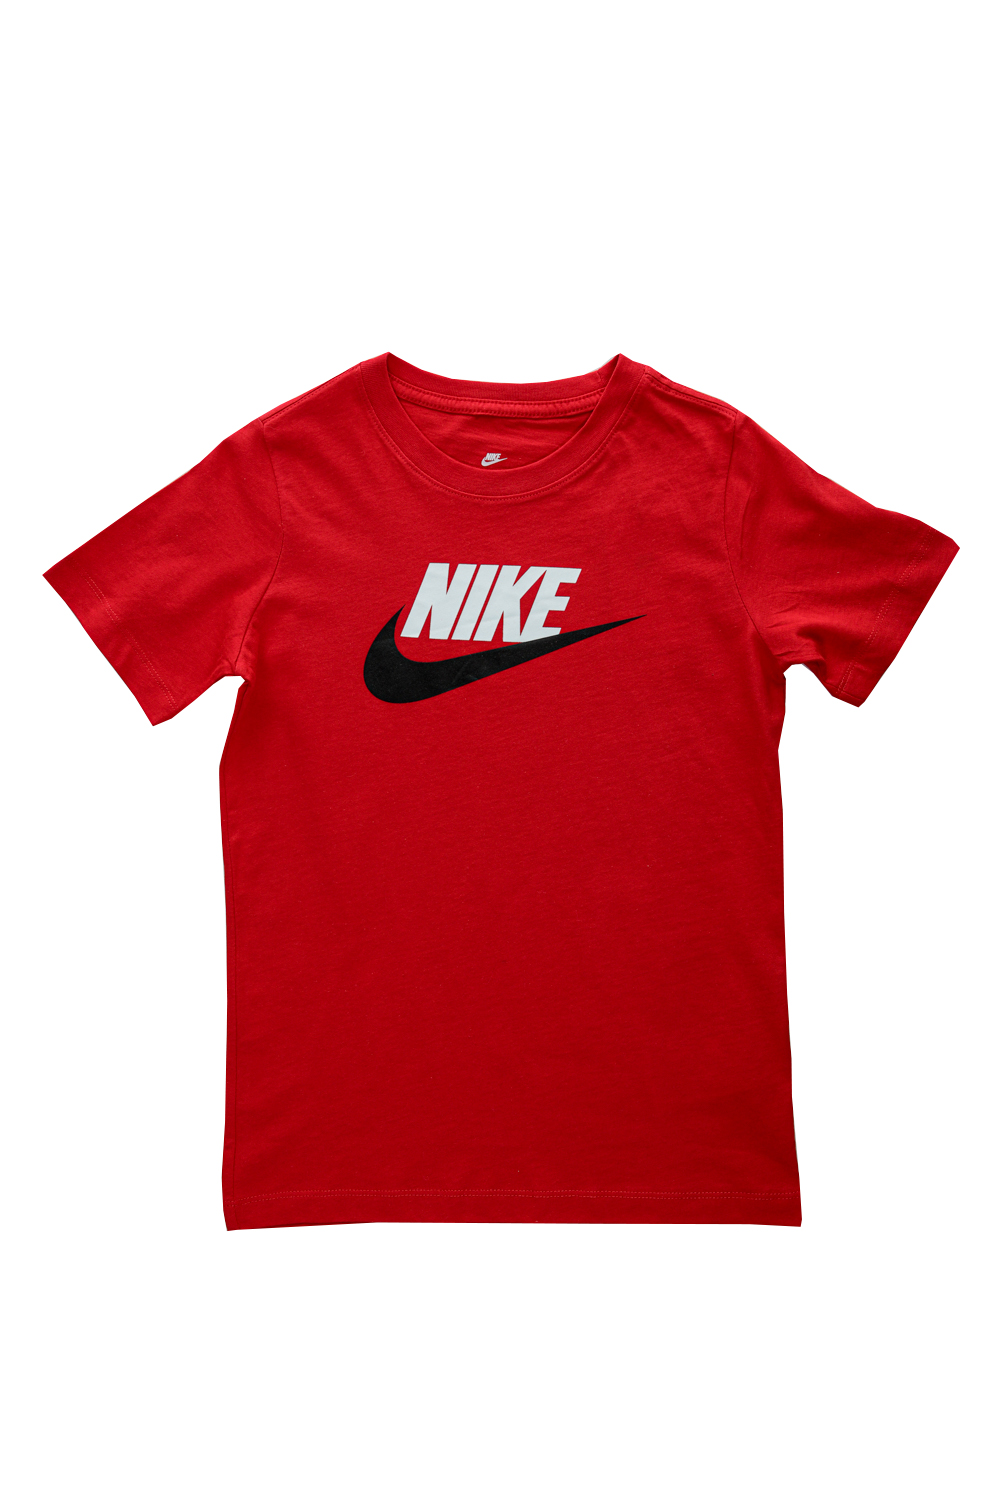 Παιδικά/Boys/Ρούχα/Αθλητικά NIKE - Παιδικό T-Shirt ΝΙΚΕ TEE FUTURA ICON κοντομάνικο κόοκινο